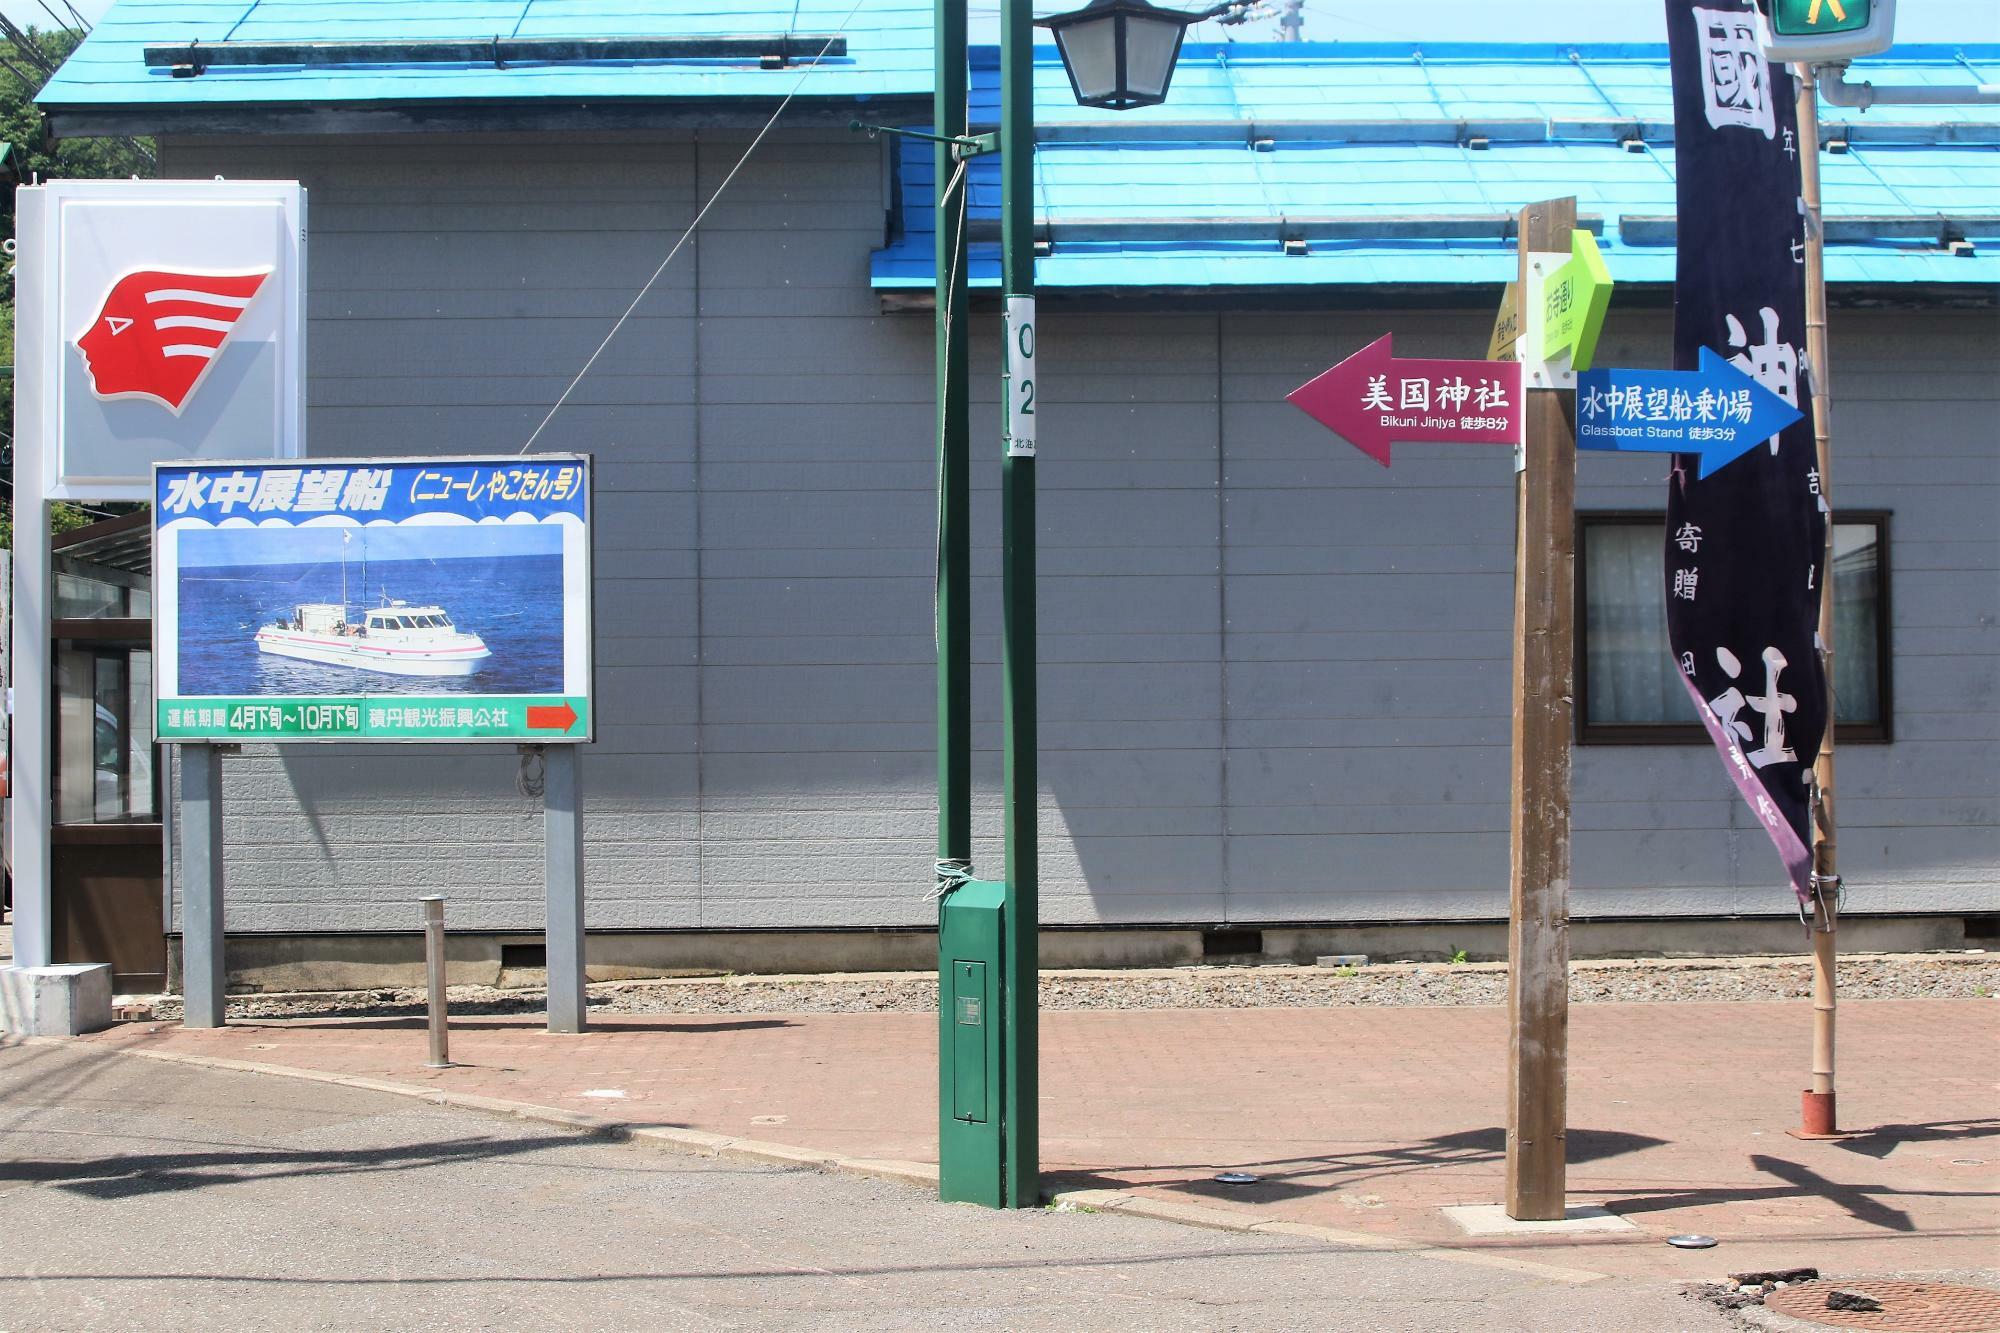 札幌・小樽・余市方面から交差点右側にある看板にも注目